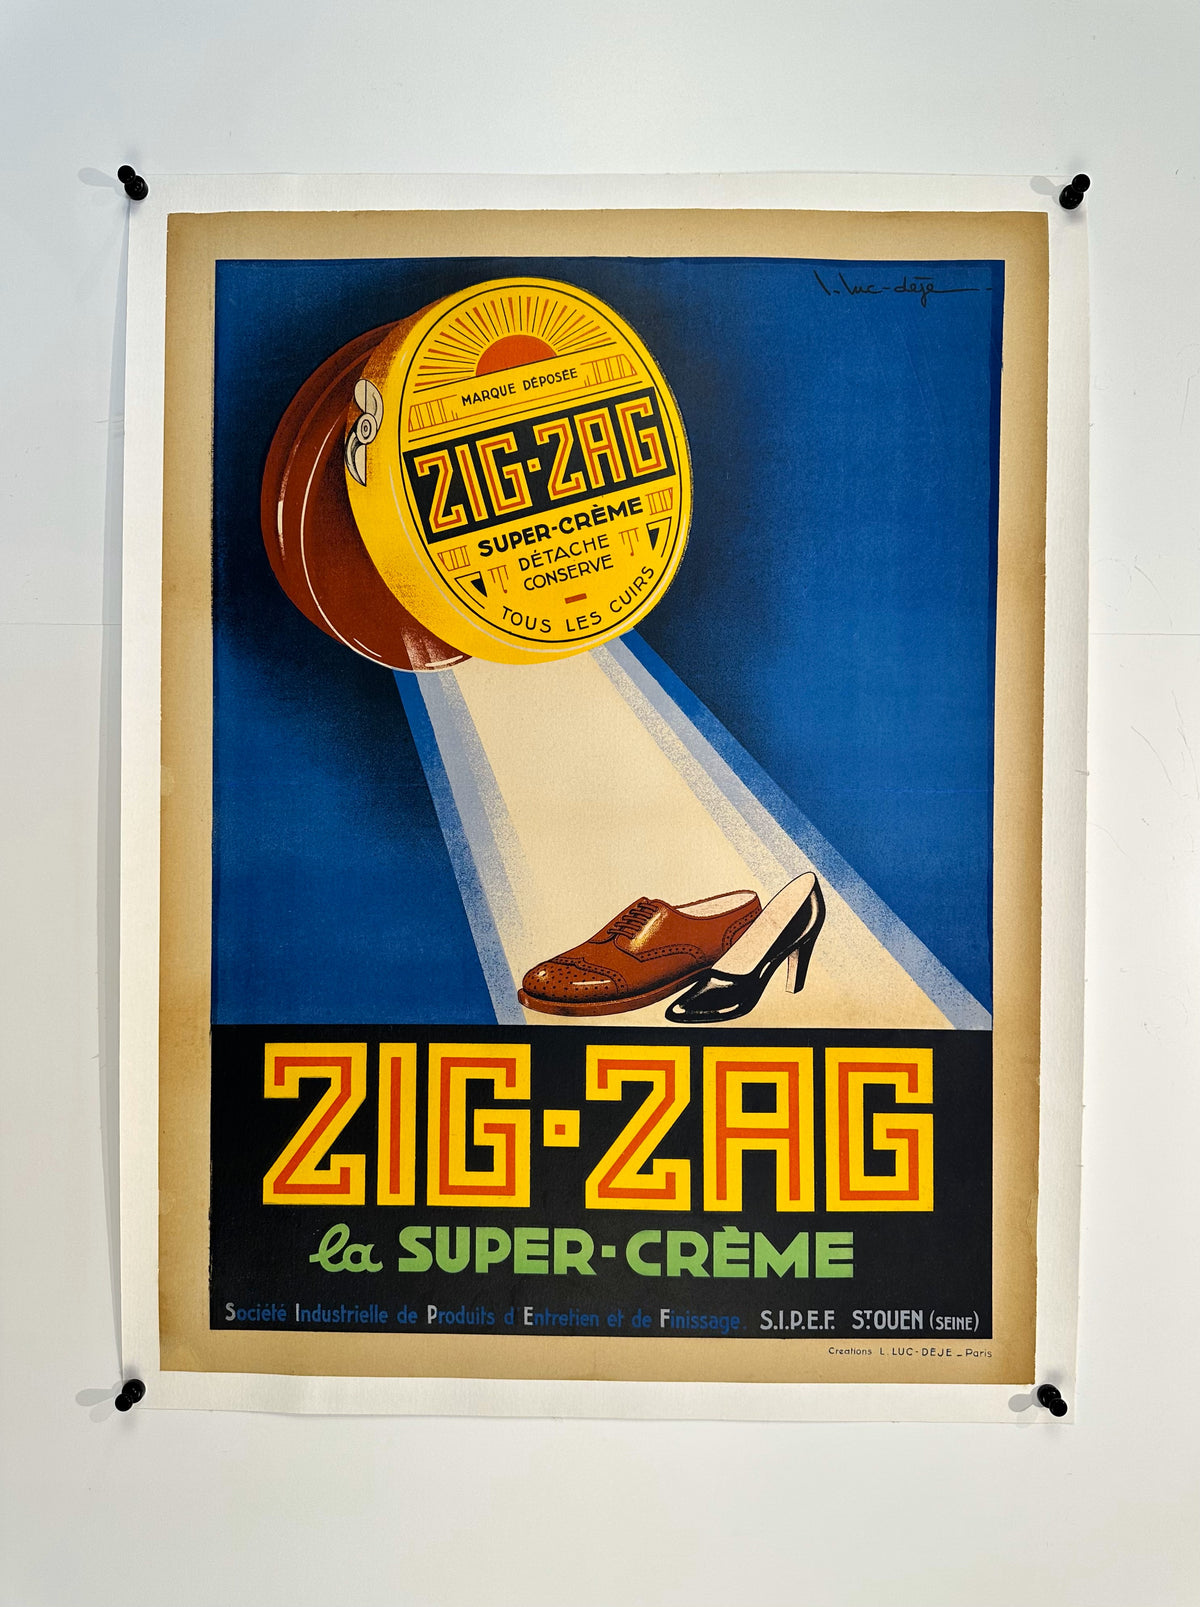 Zig-Zag, Super Crème - Authentic Vintage Poster